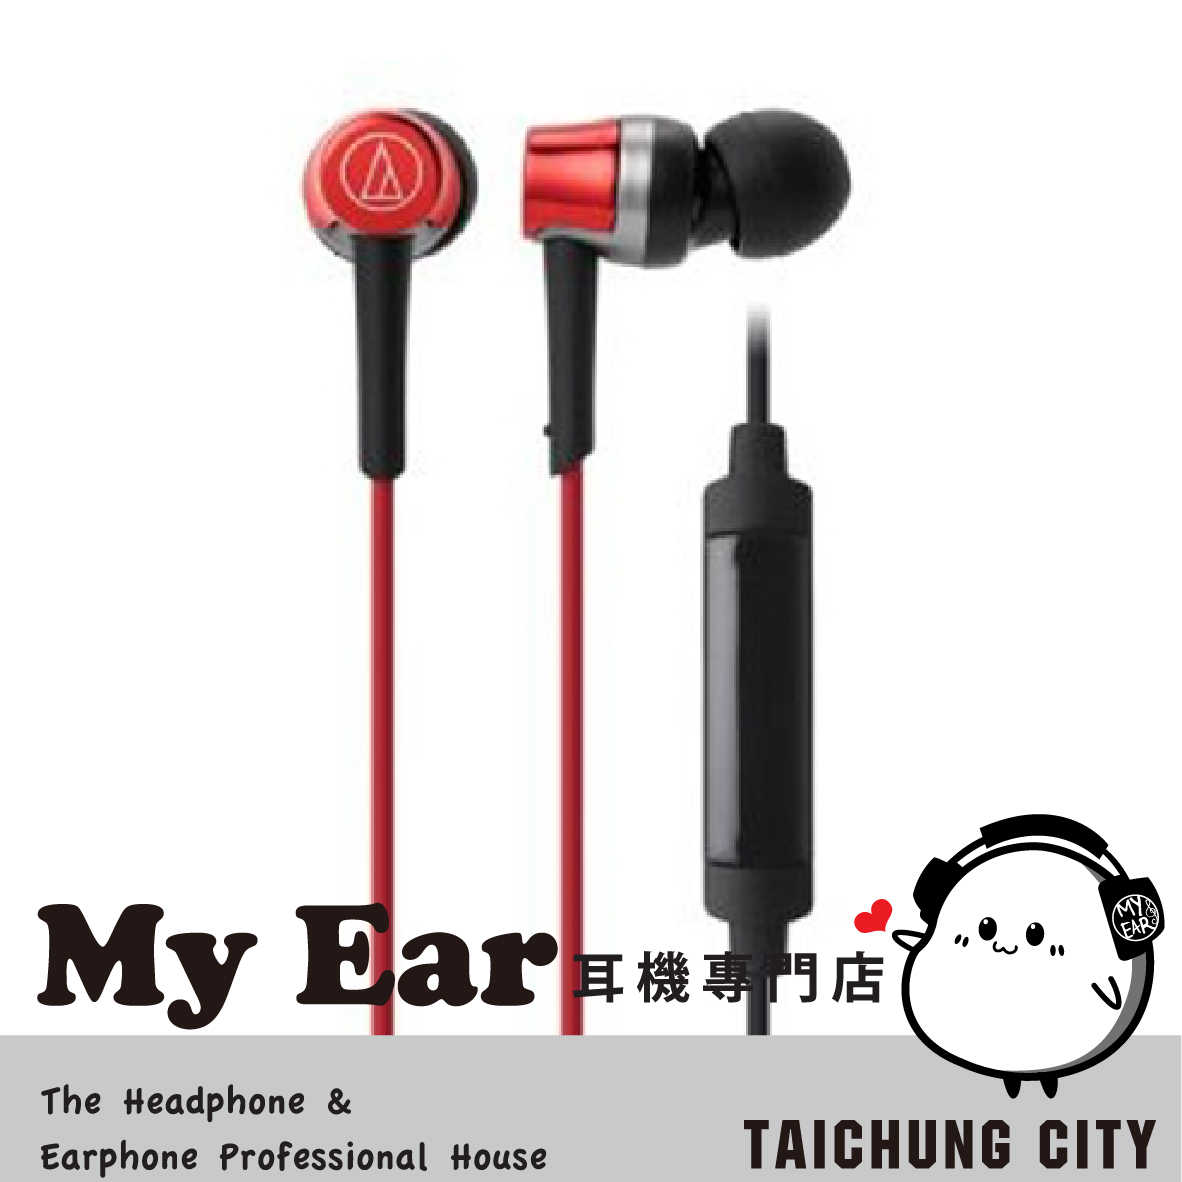 鐵三角 ATH-CKR30is 多色可選 線控 耳道式 耳機  | My Ear 耳機專門店